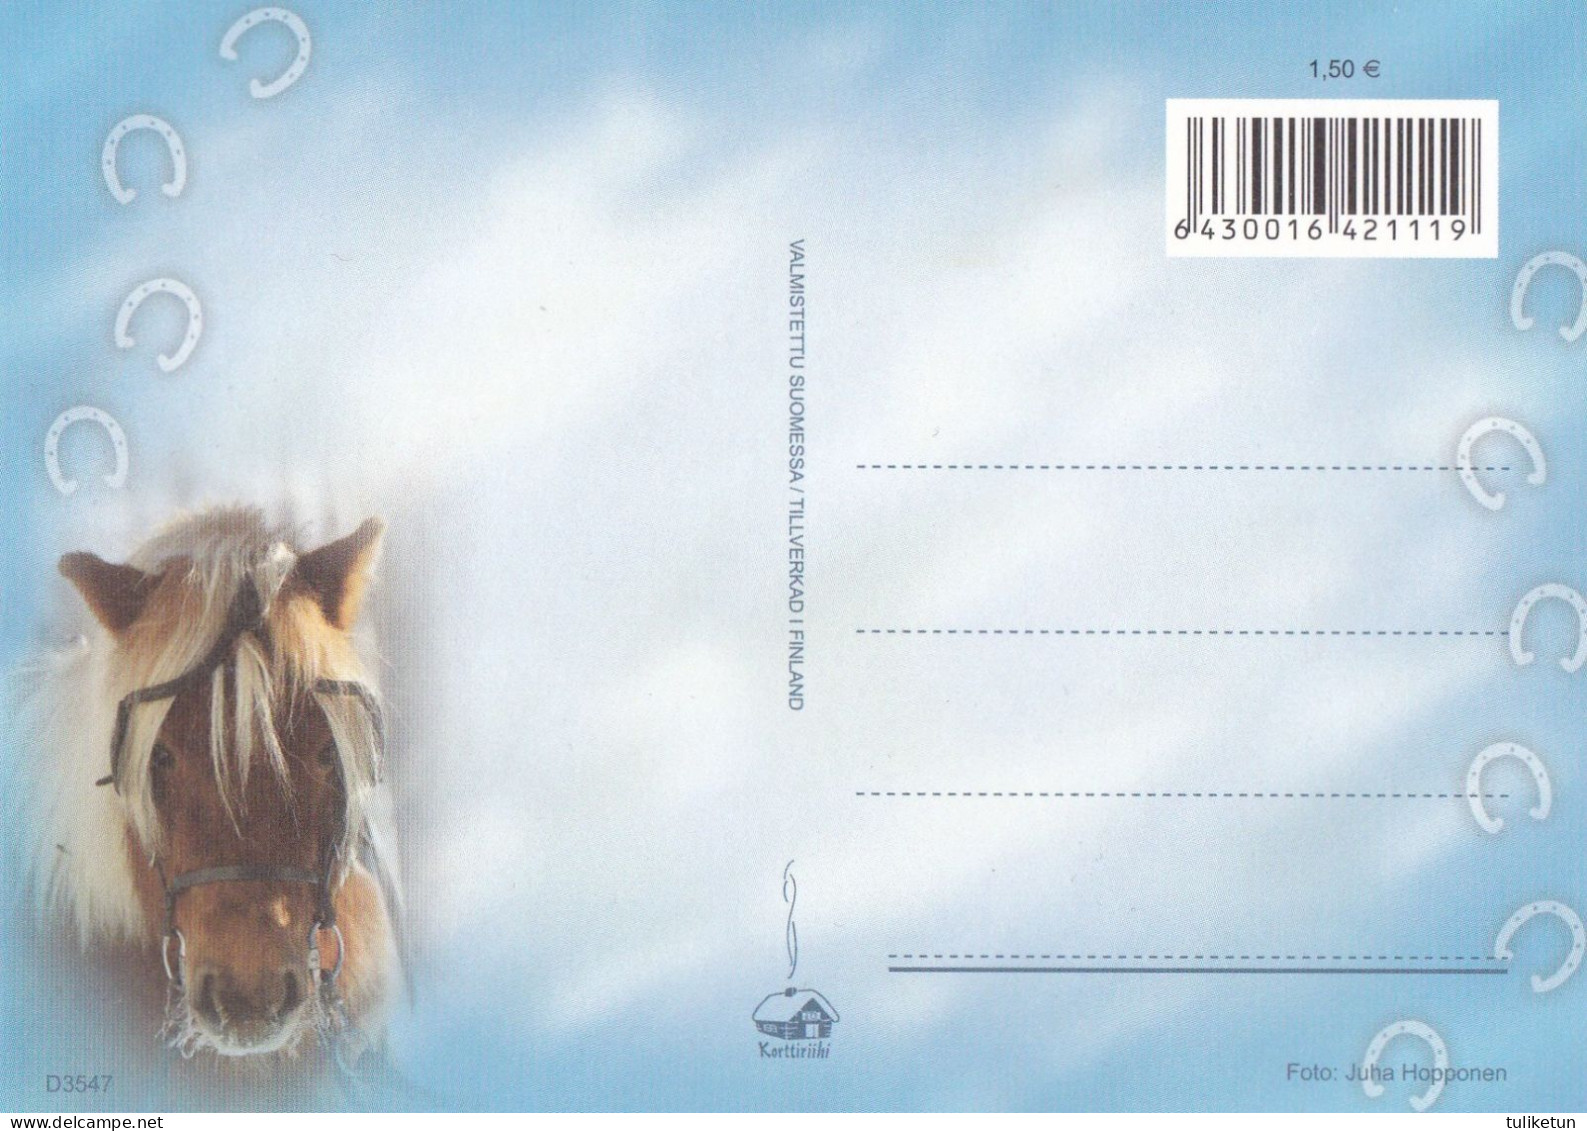 Horse - Cheval - Paard - Pferd - Cavallo - Cavalo - Caballo - Häst - Korttiriihi - Finland - Chevaux